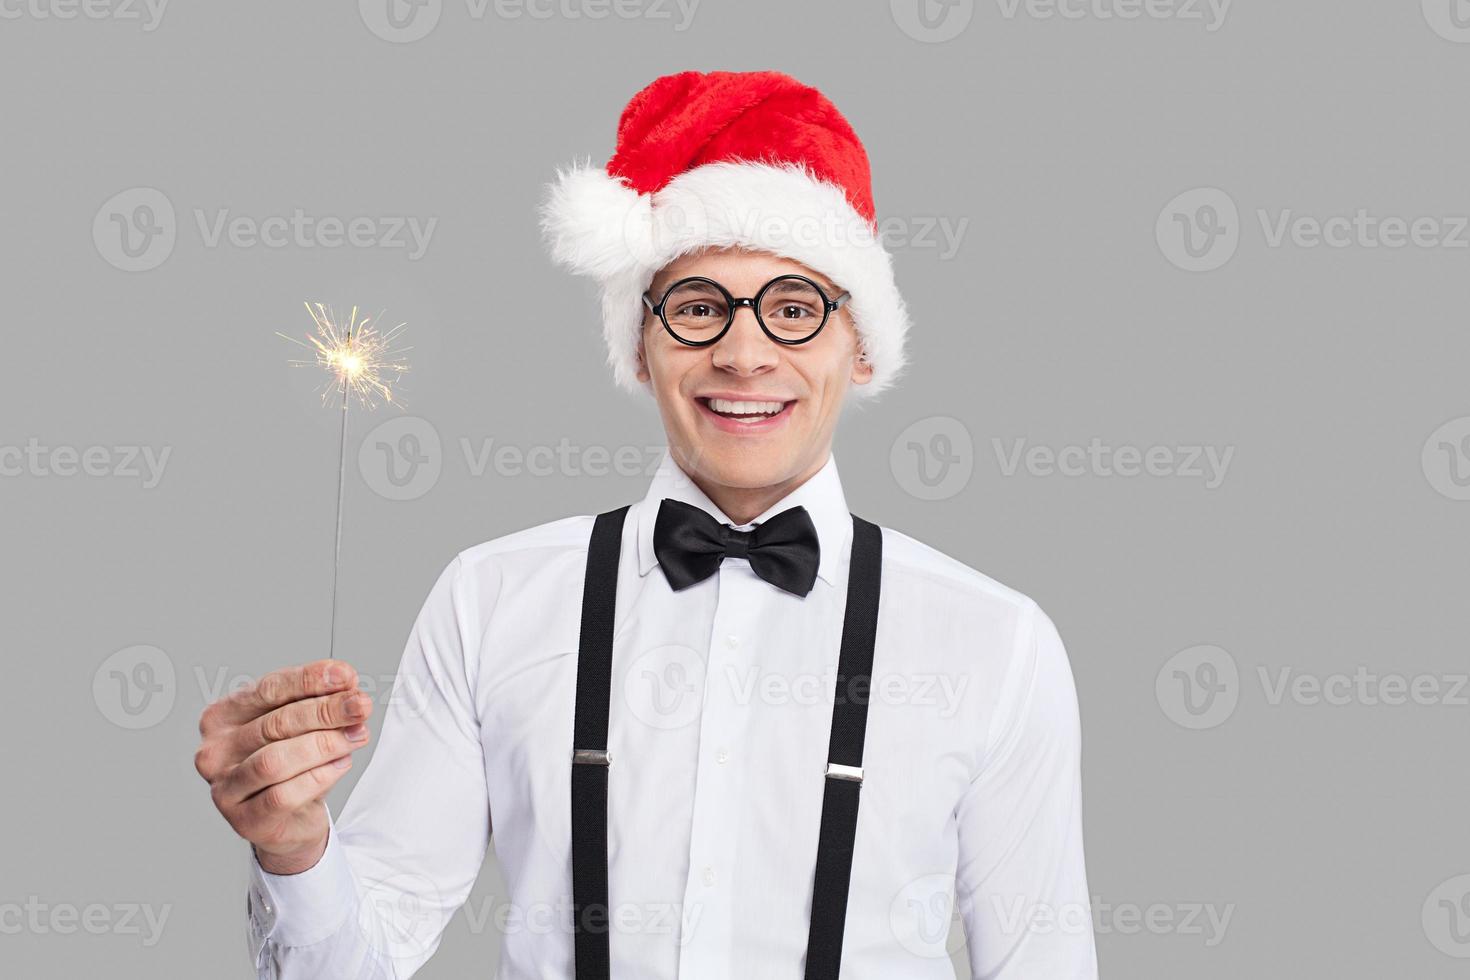 feliz año nuevo alegre joven nerd con corbata de moño y tirantes sosteniendo una bengala y sonriendo mientras se enfrenta a un fondo gris foto